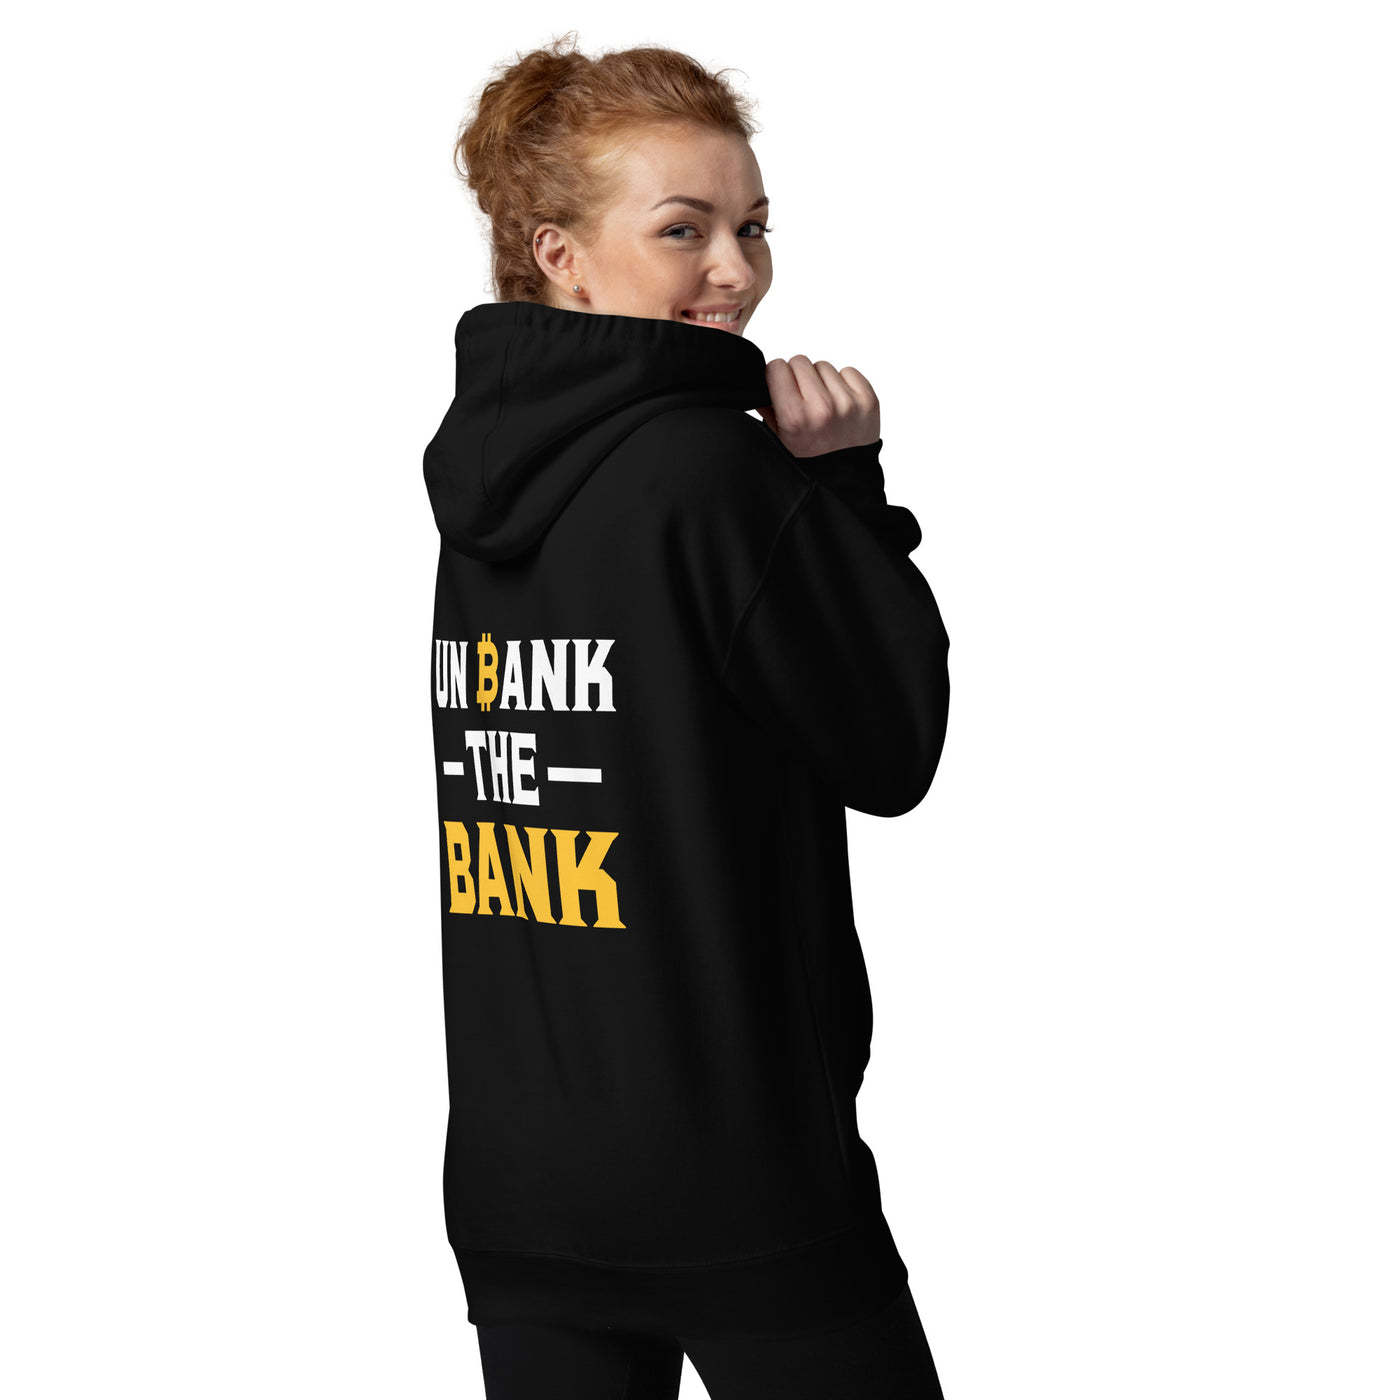 Unbank the Bank - Unisex Hoodie ( Back Print )